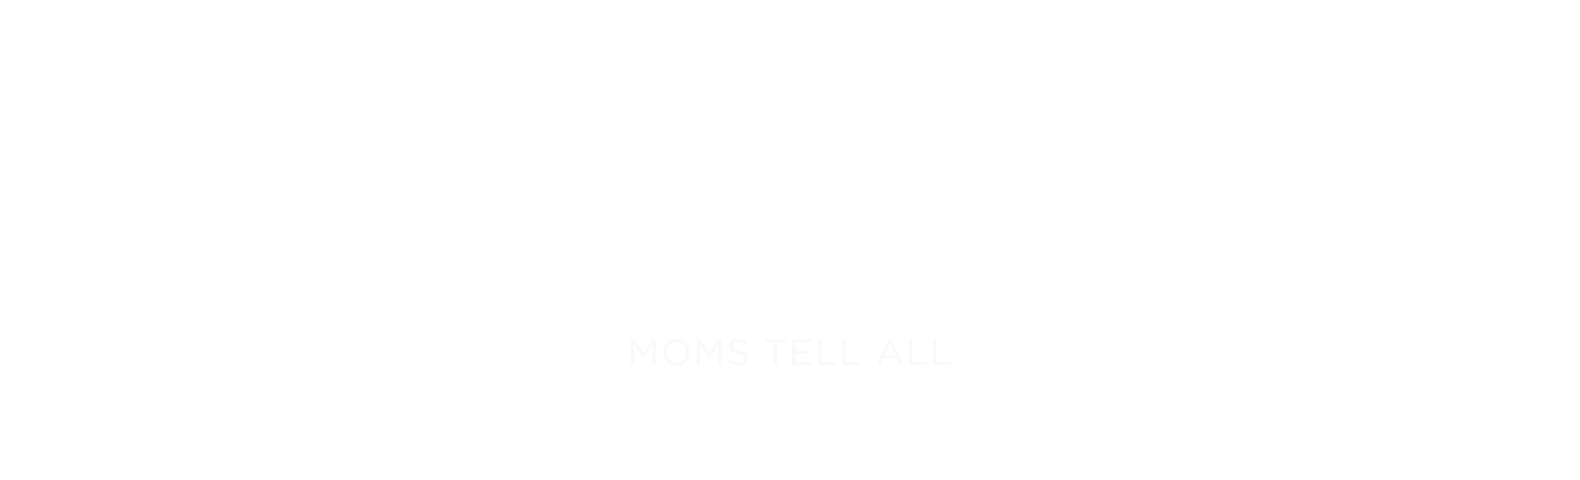 Copy of motherhood untold_ IGfeed (1580 × 480 px).png